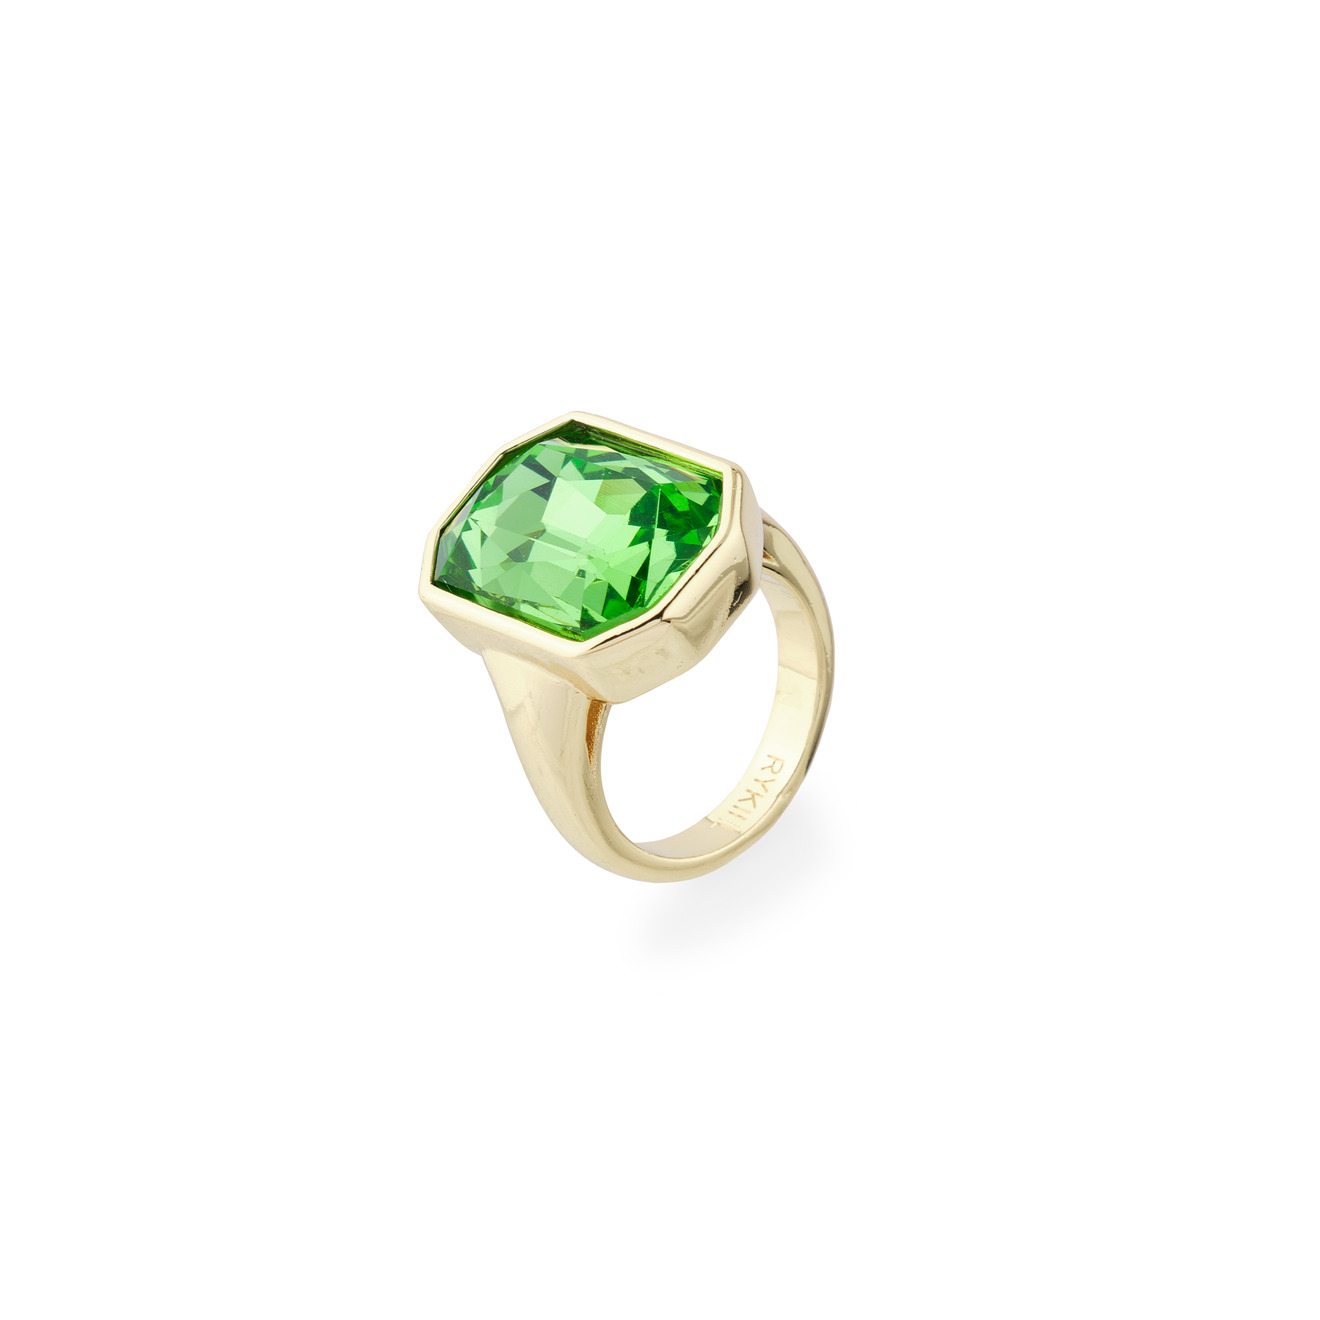 SONIA RYKIEL Золотистое кольцо с зеленым кристаллом lisa smith широкое золотистое кольцо с круглым кристаллом